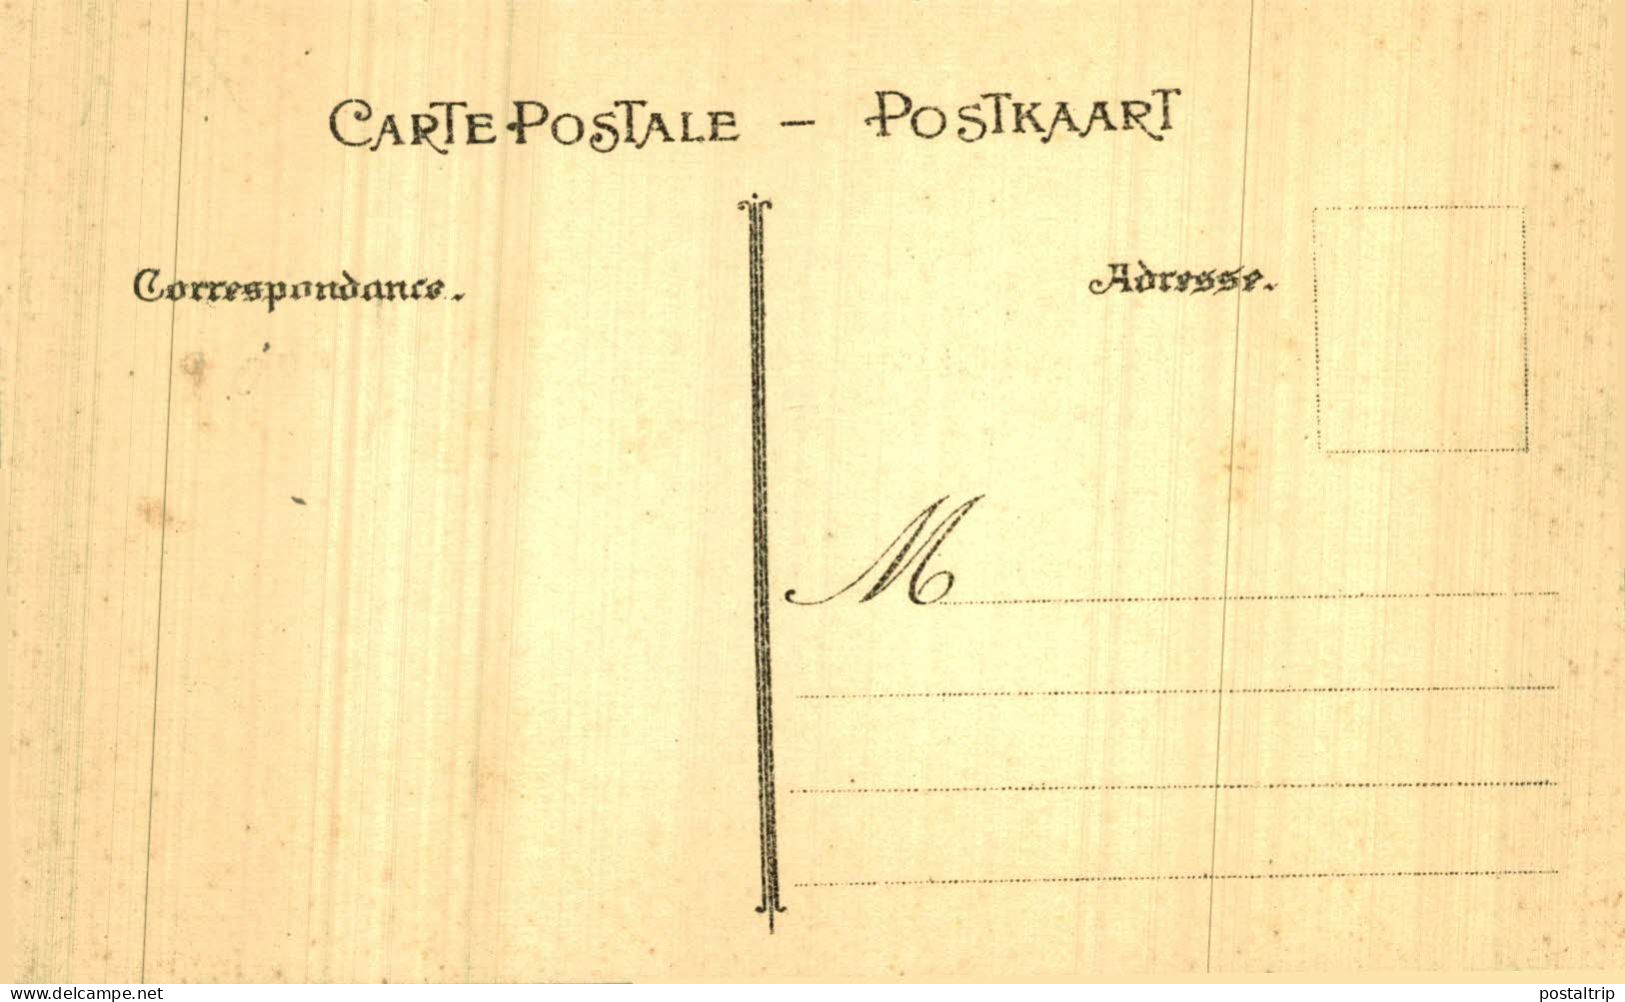 LOTE 40 POSTALES HAINAUT Tournai - Cortège-Tournoi de Chevalerie (1513-1913)